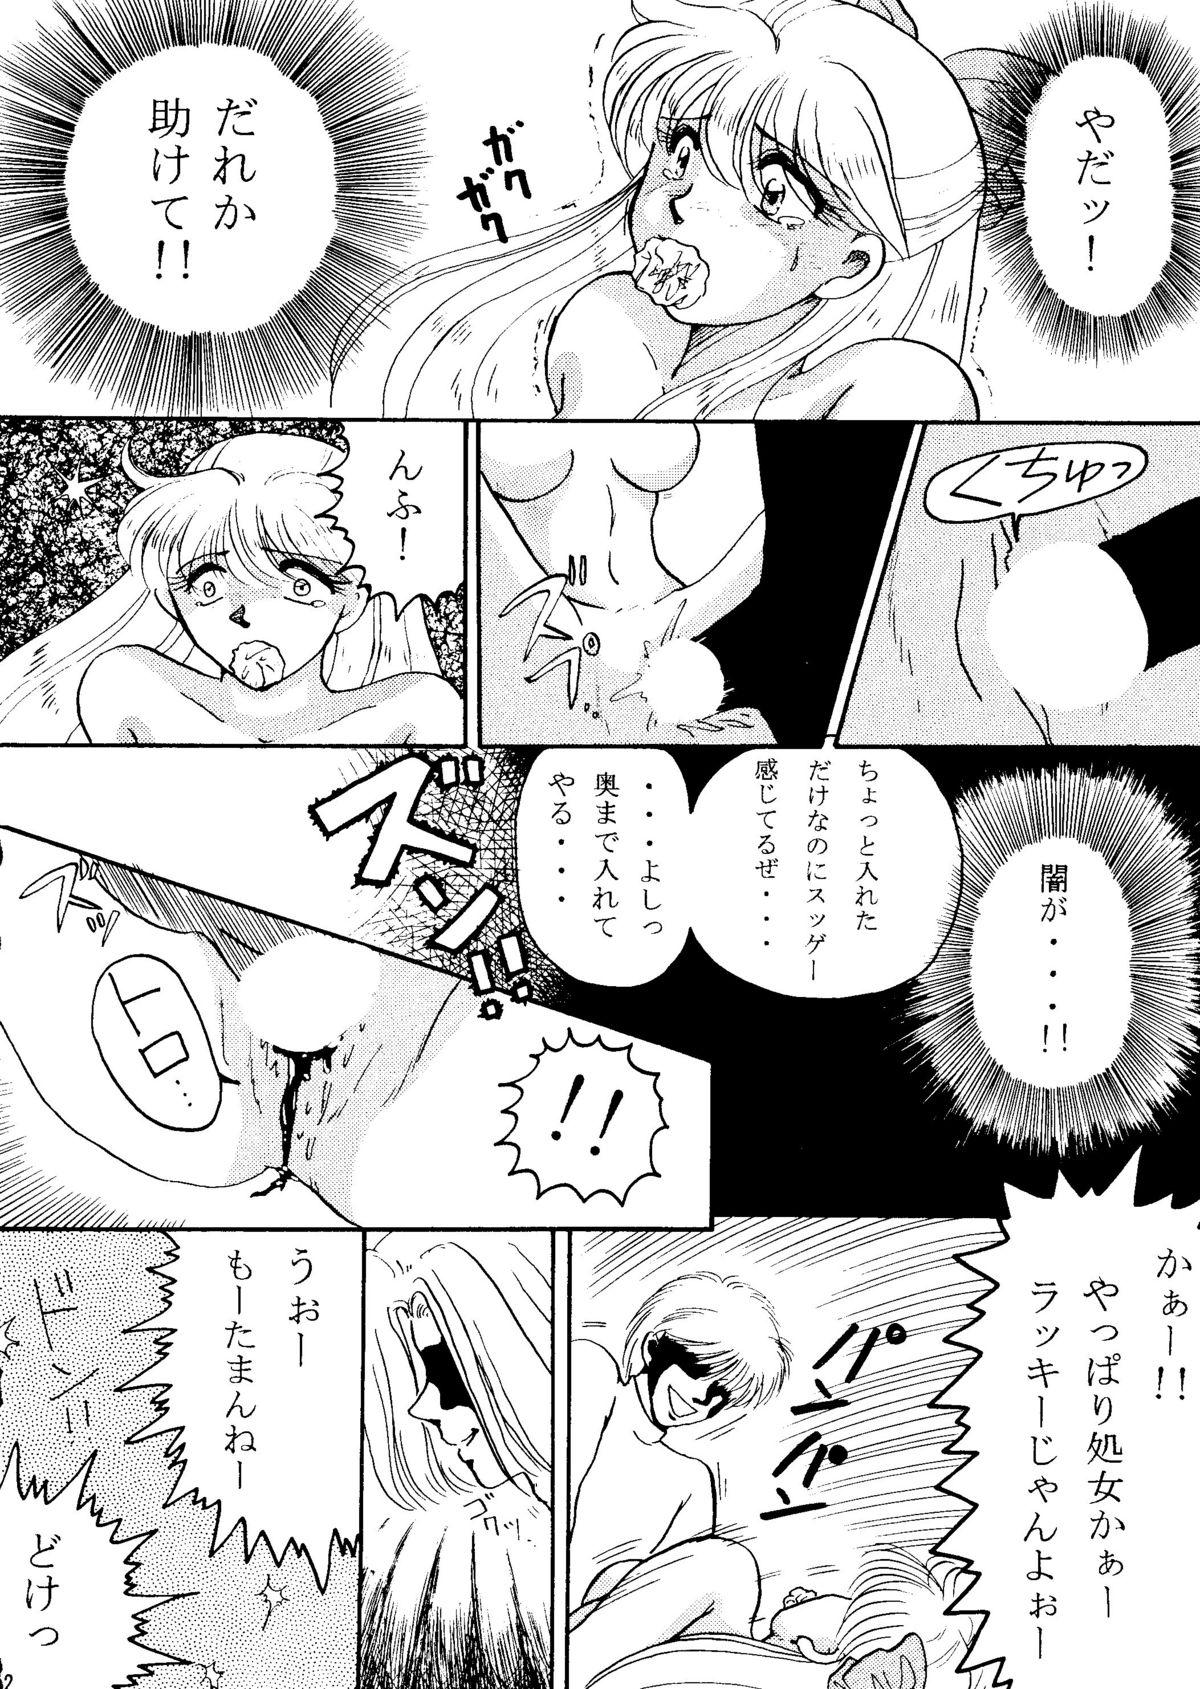 Rola Grandia - Sailor moon Gemidos - Page 11